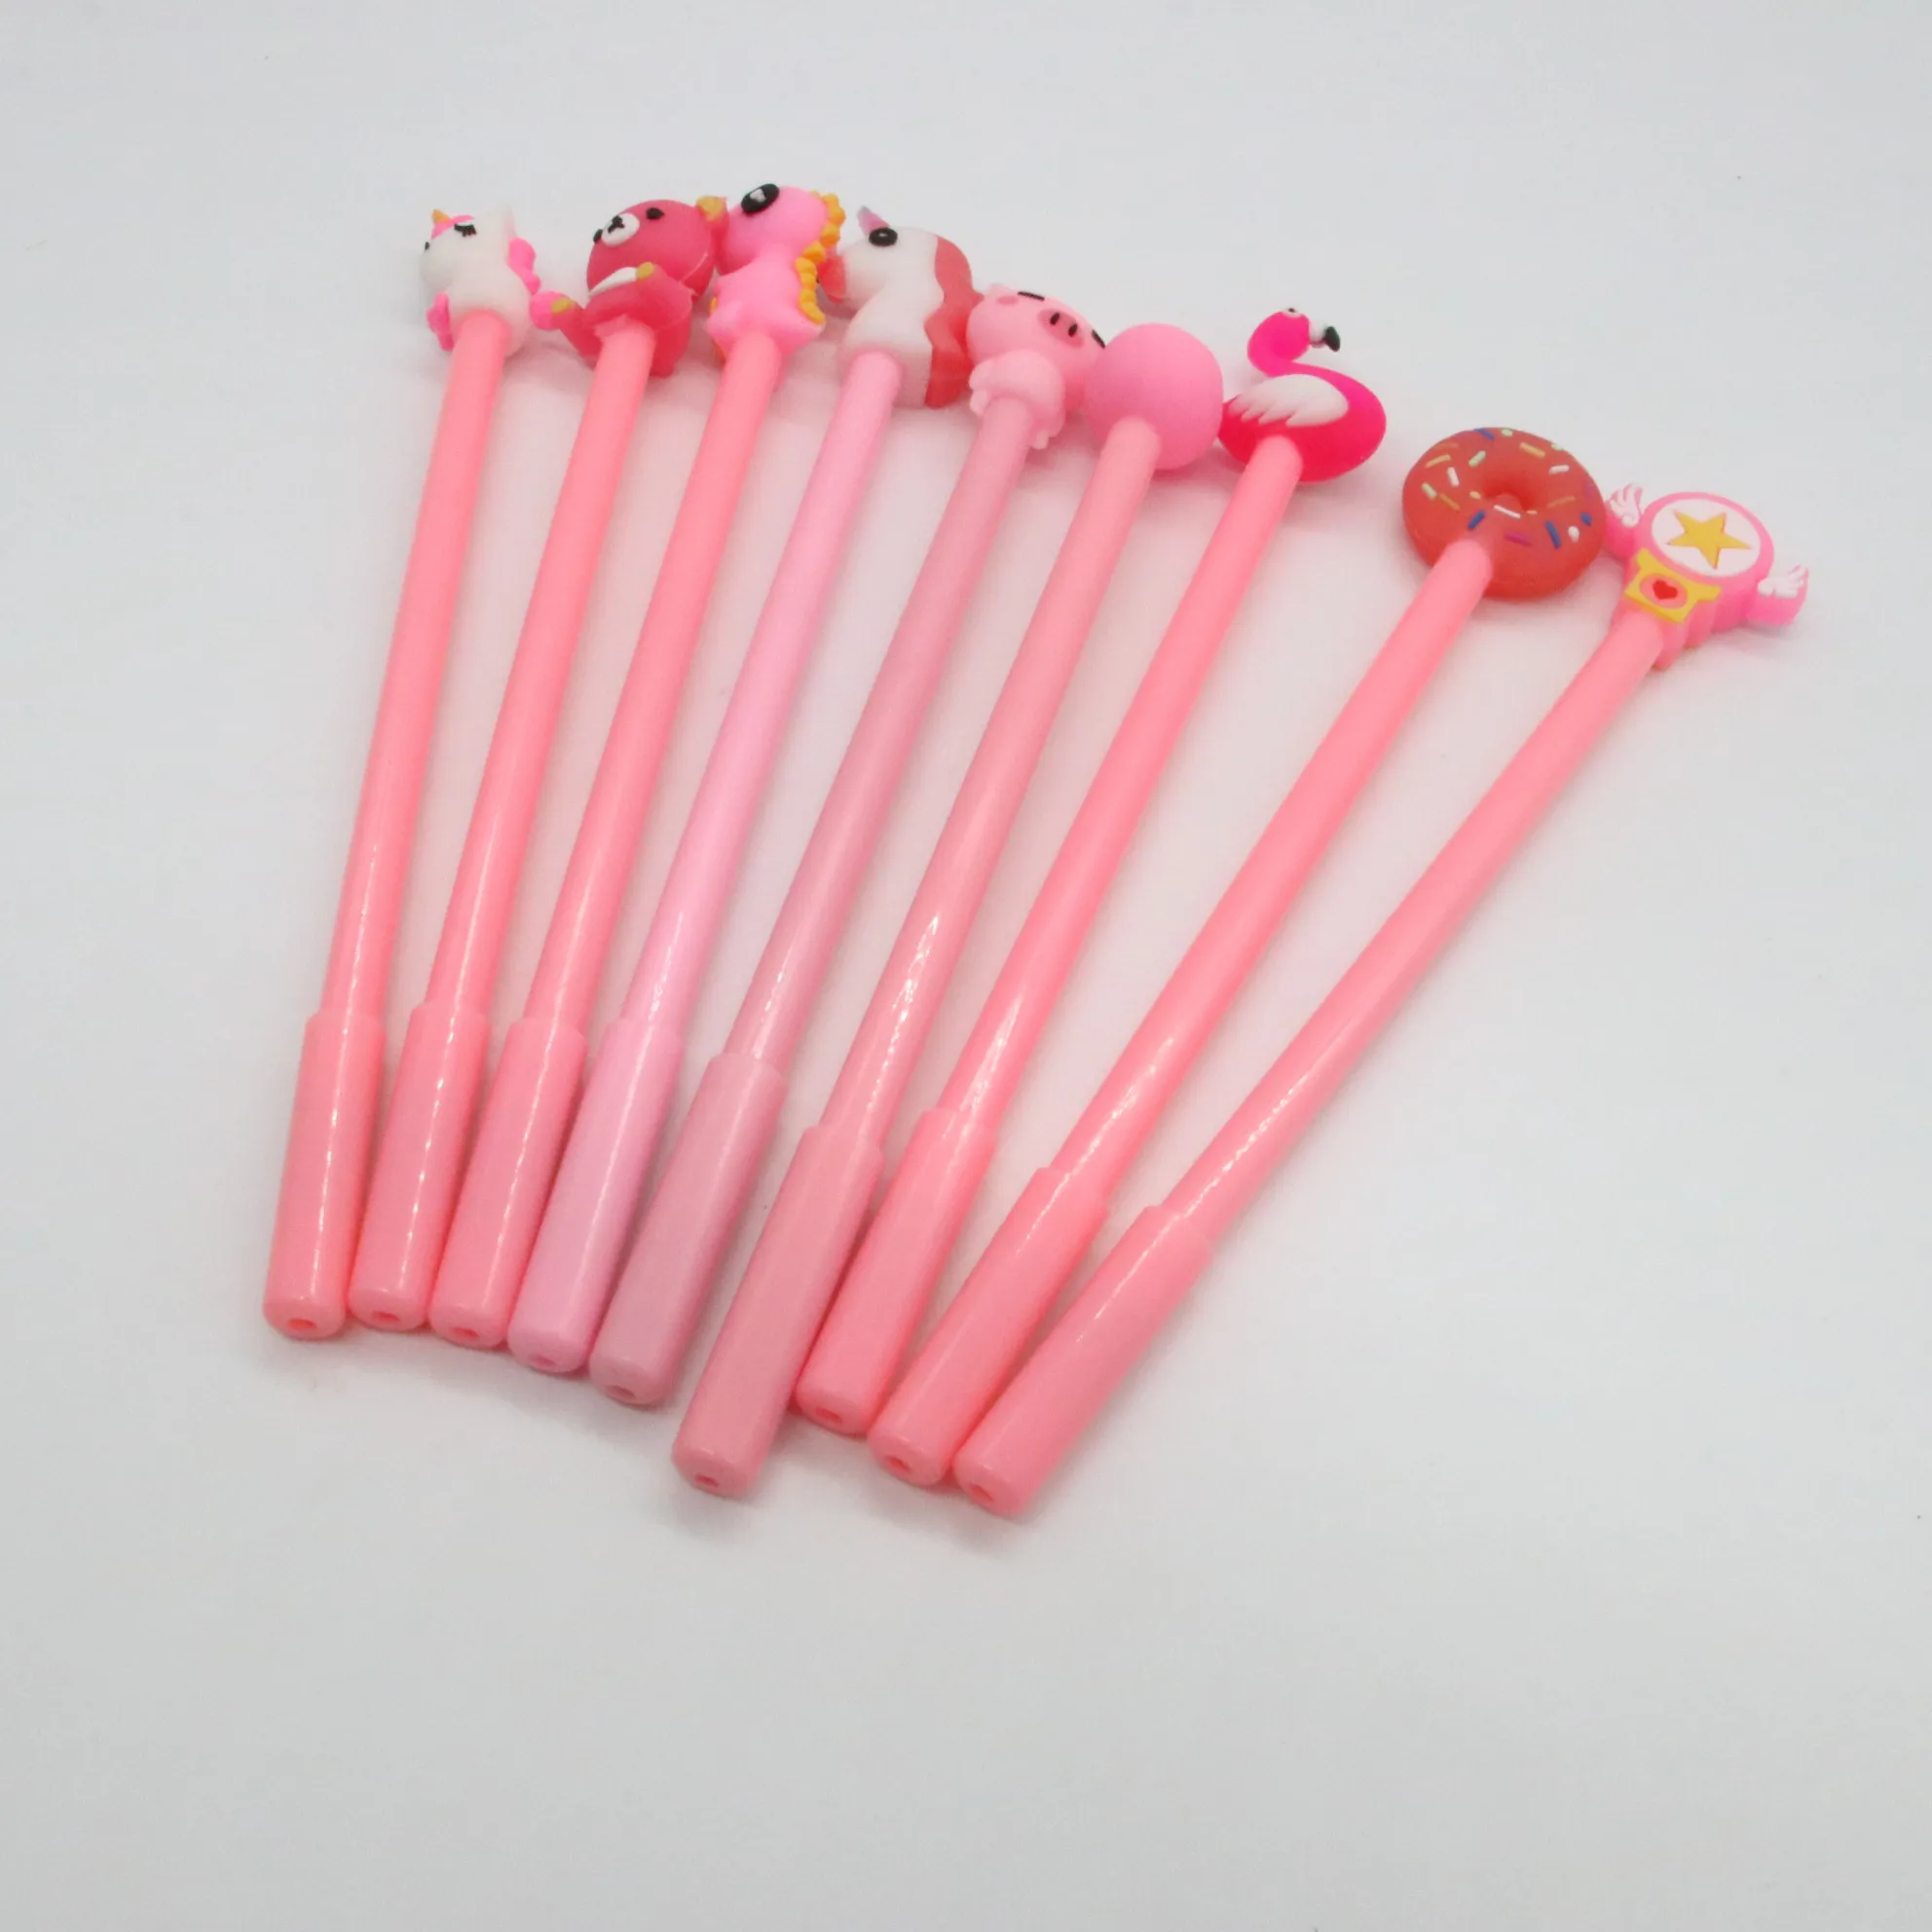 12 piece/bags пластиковые стержни для гелевых ручек каваи ручки кактус милые ручки животных оптом для студентов